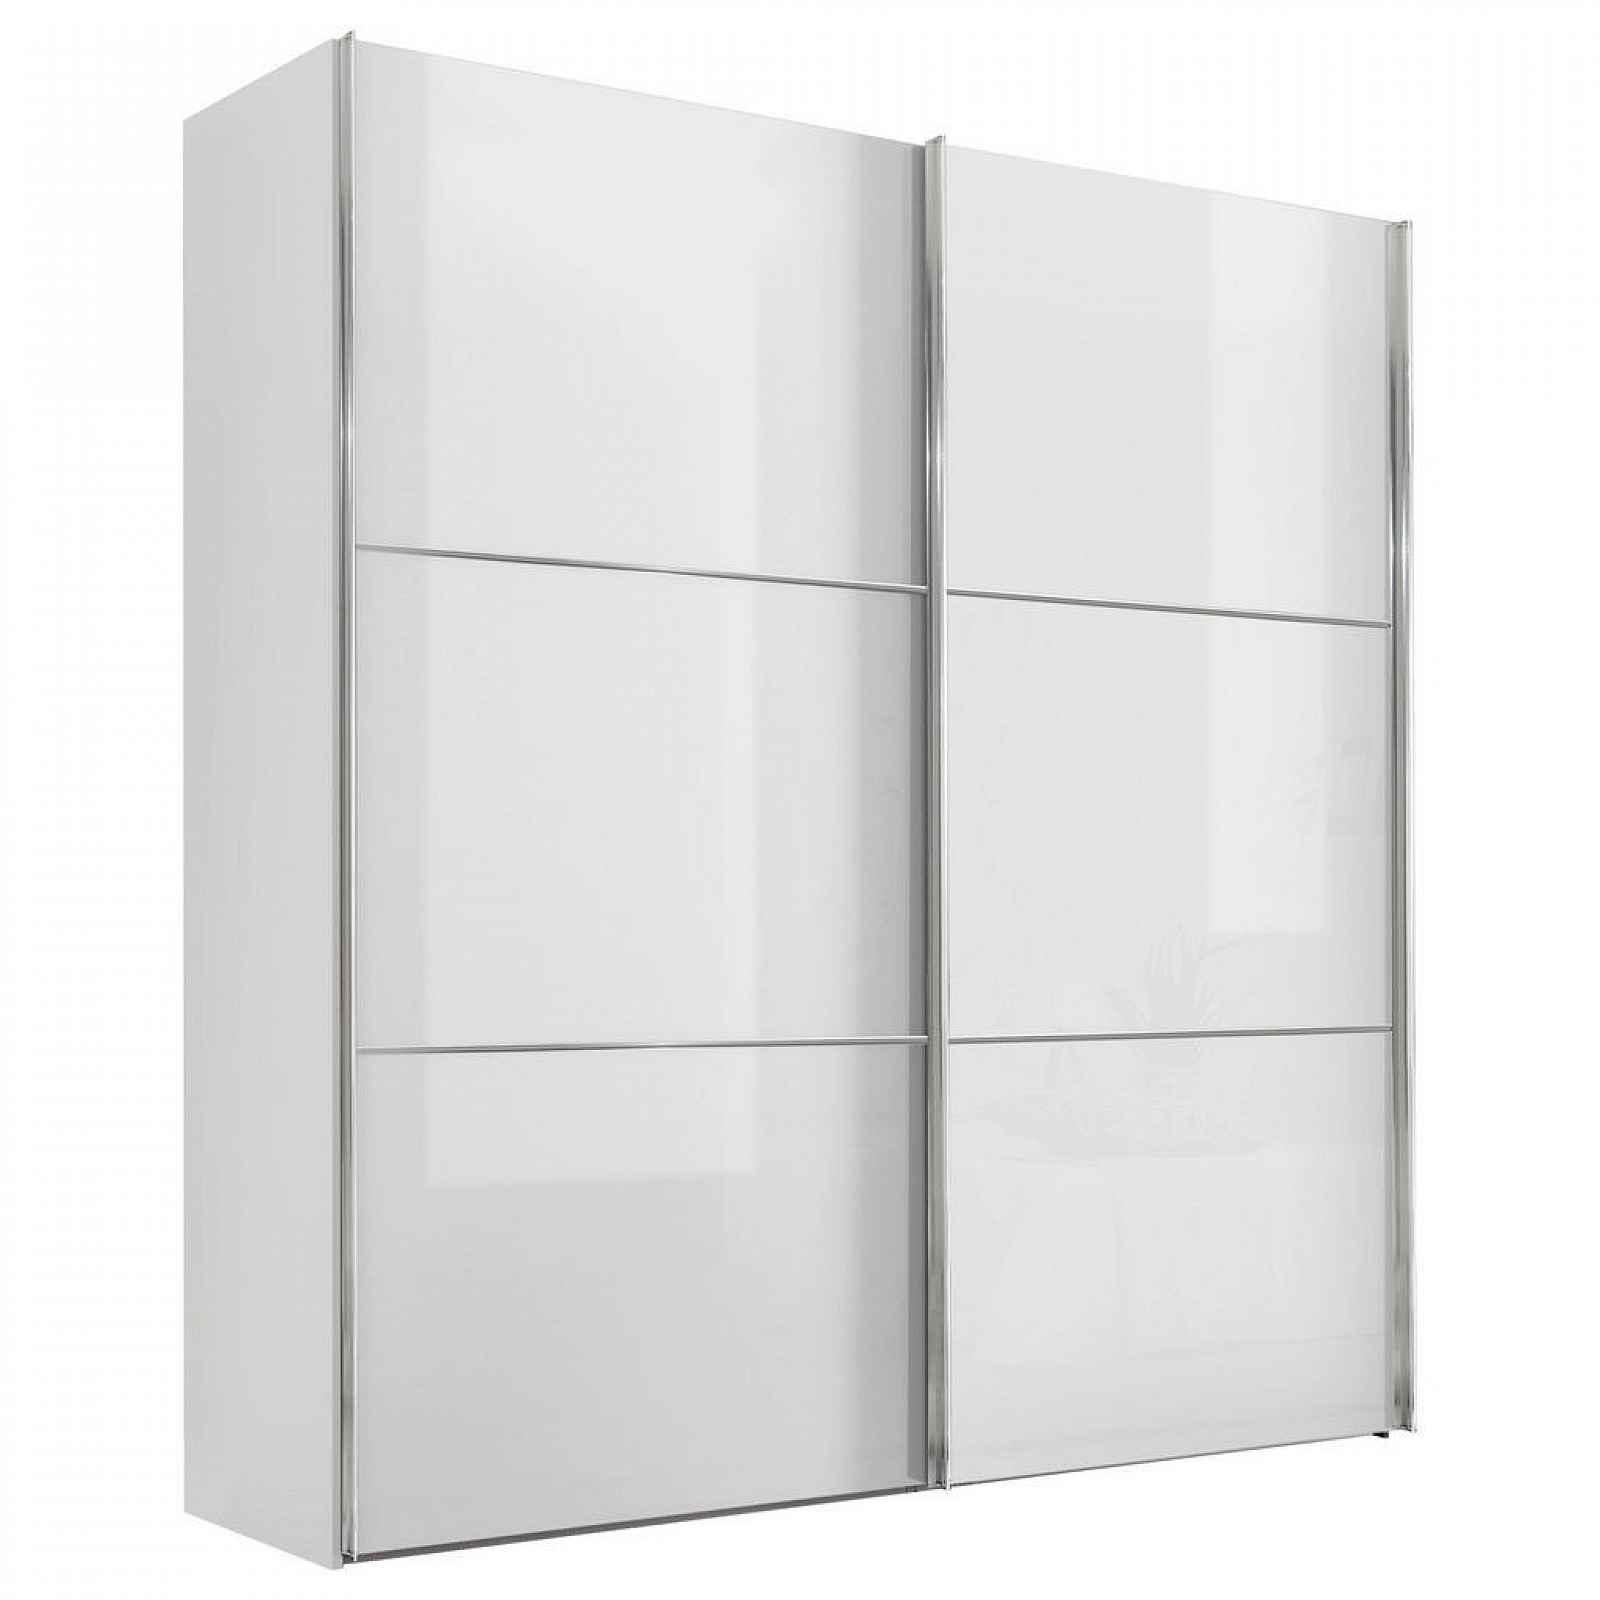 Moderano SCHWEBETÜRENSCHRANK Glasfront, bílá, 167/222/68 cm - Šatní skříně - 000531006072